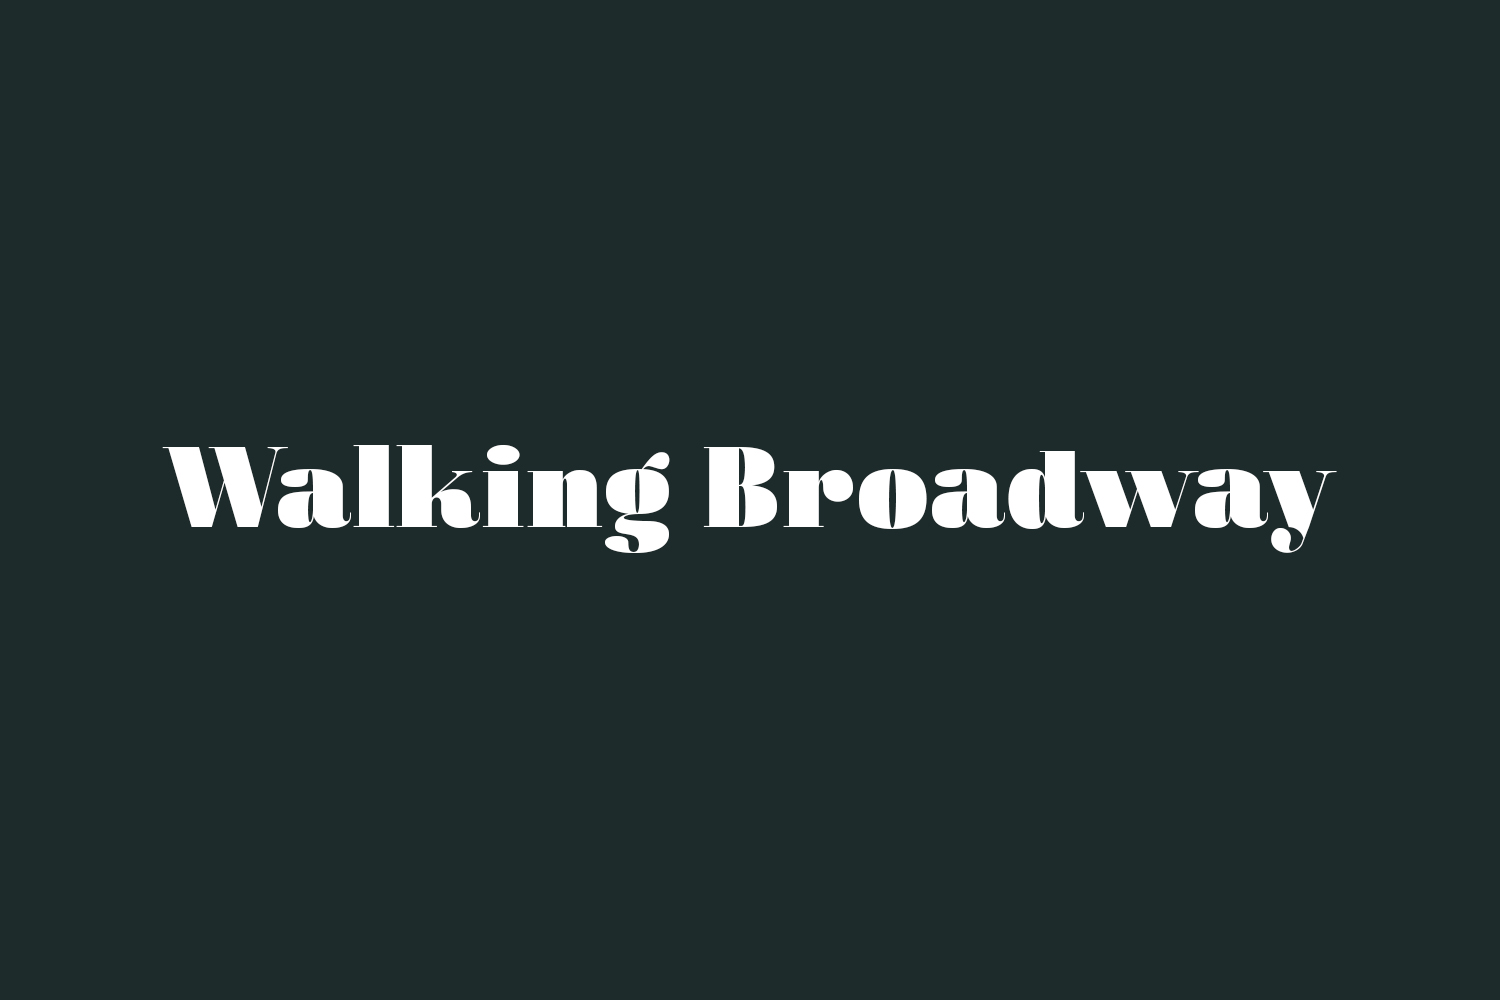 Walking Broadway Free Font